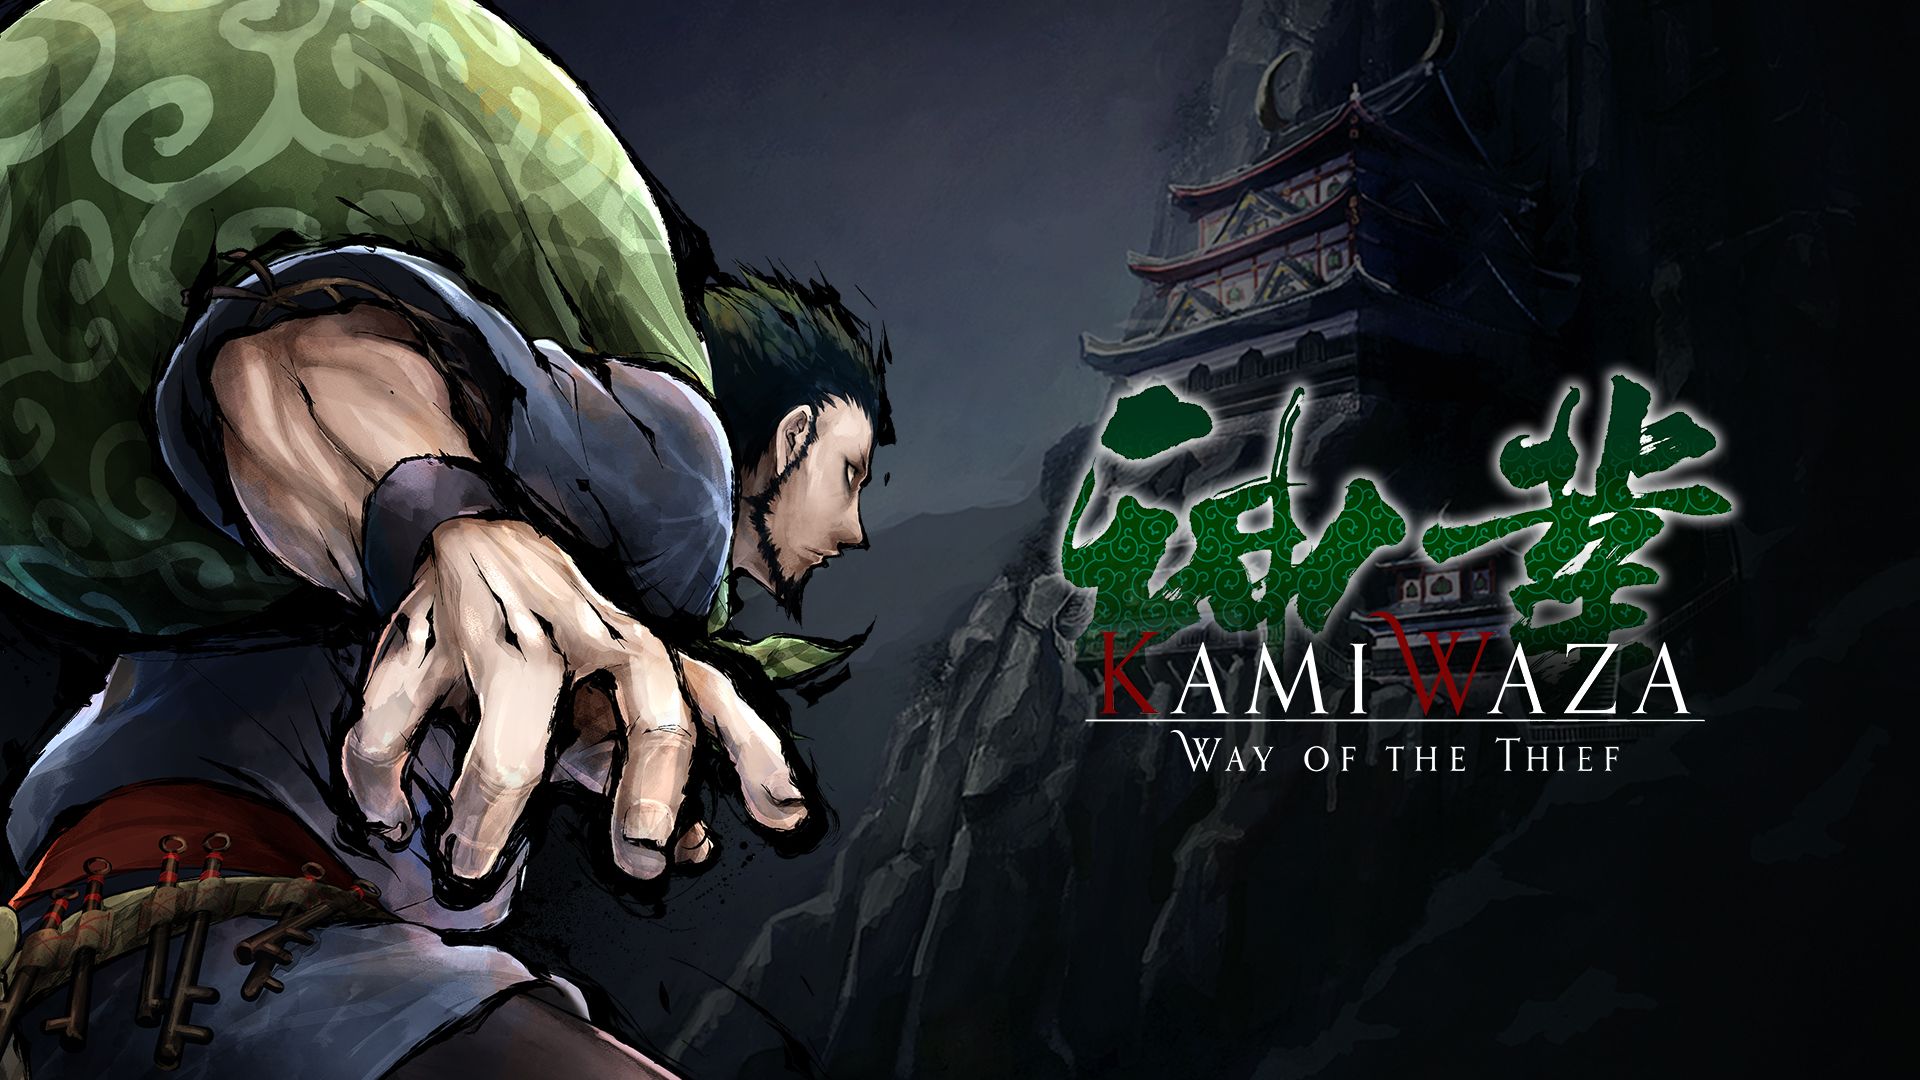 #Kamiwaza: Way of the Thief erscheint im Oktober in Japan